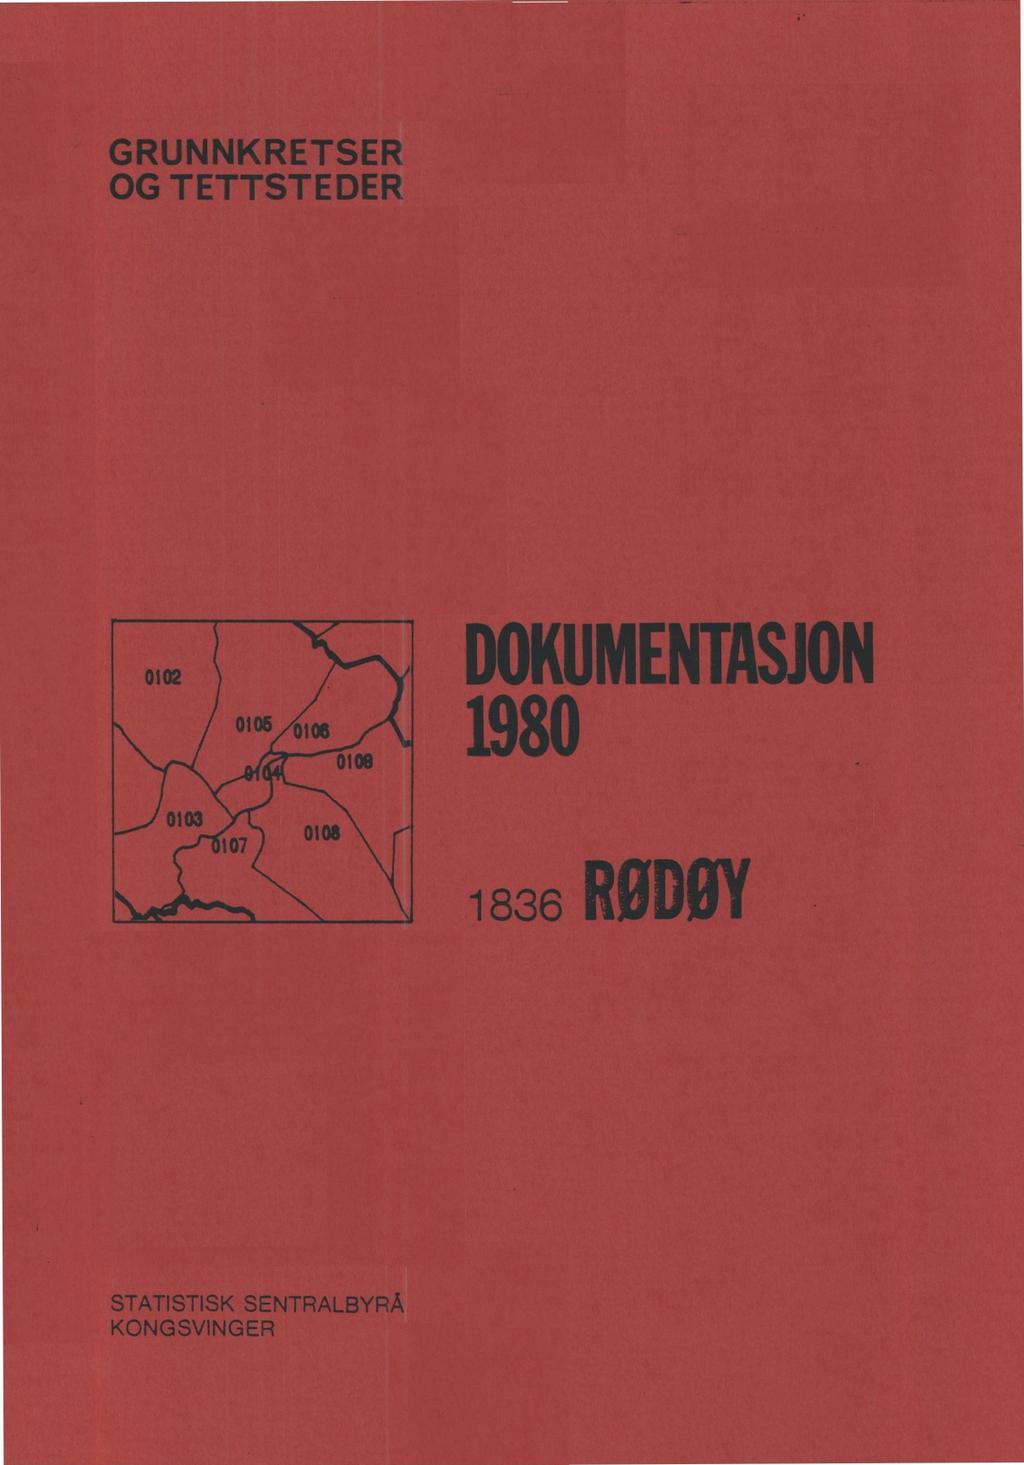 GRUNNKRETSER OG TETTSTEDER DOKUMENTASJON 1980